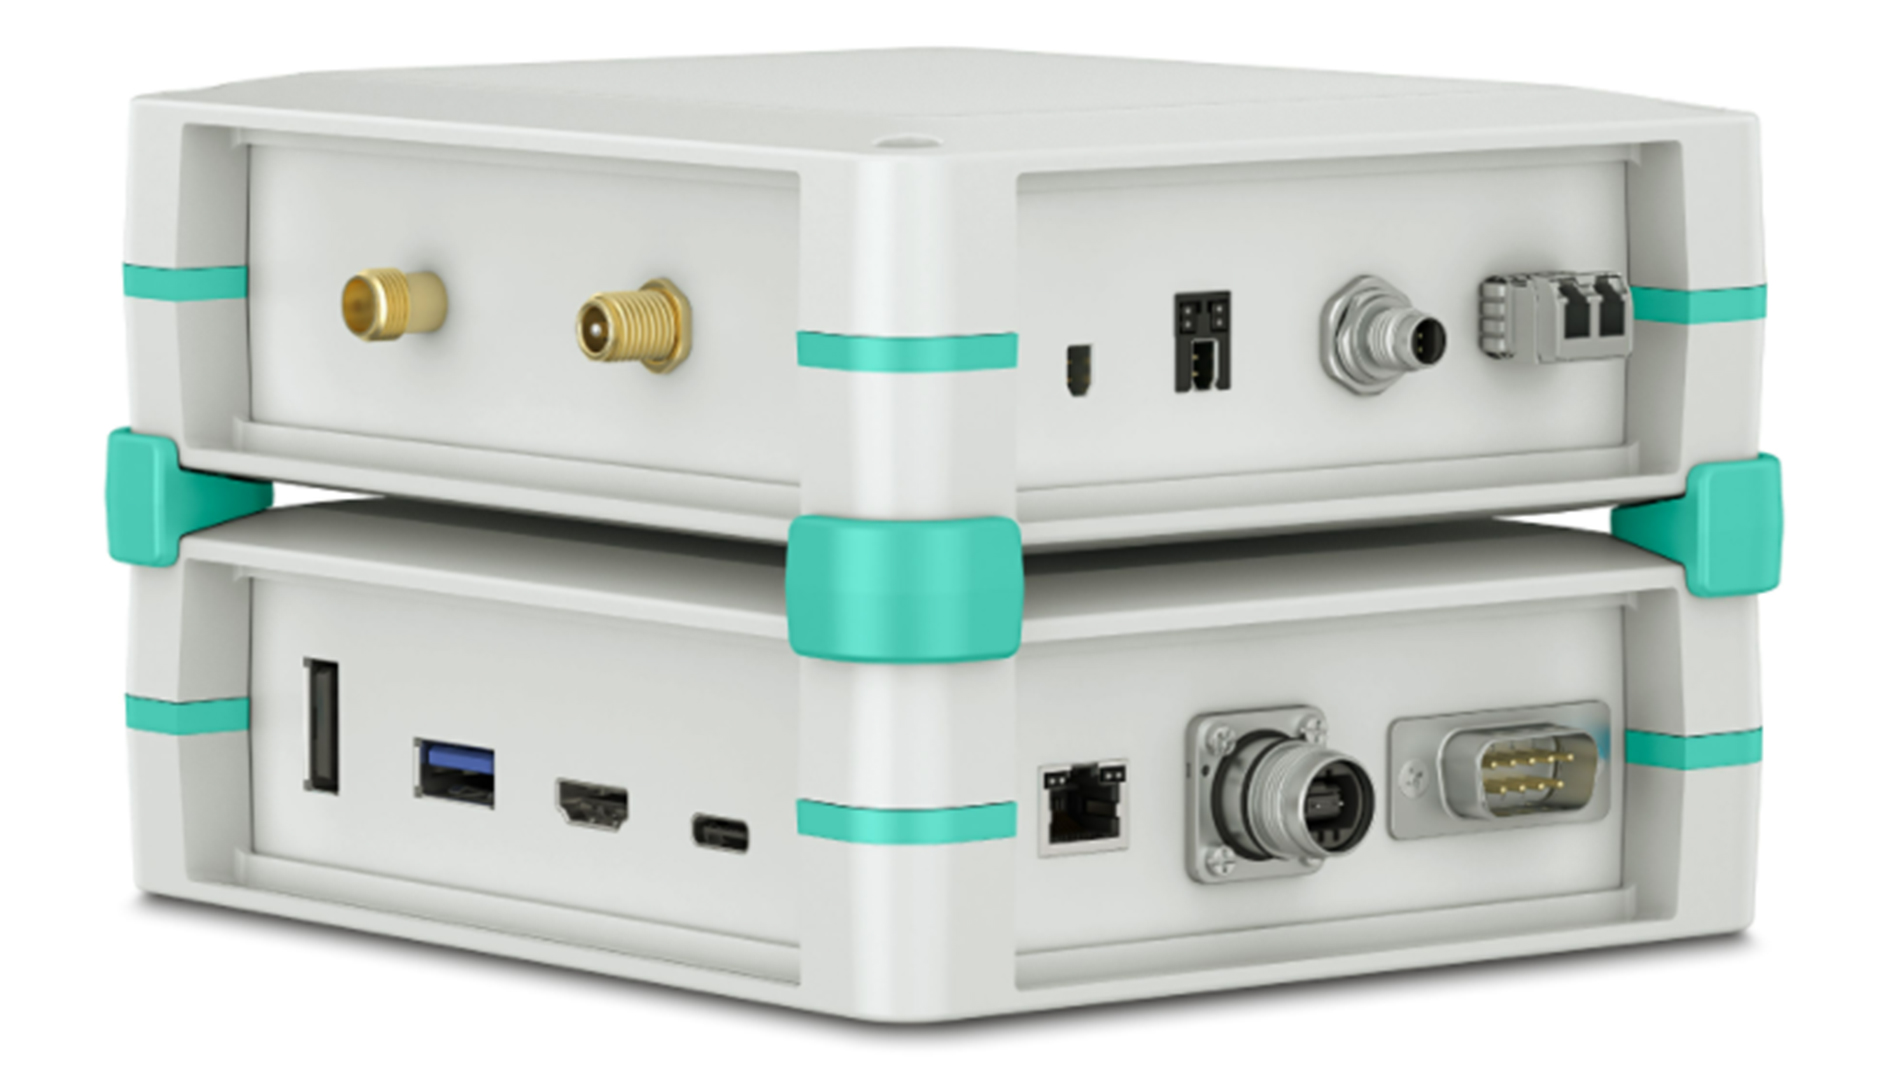 Unser Portfolio an Datensteckern für alle Geräteschnittstellen: von RJ45 über USB, HDMI und D-SUB bis hin zum Koaxial- und LWL-Anschluss sowie für Single Pair Ethernet.